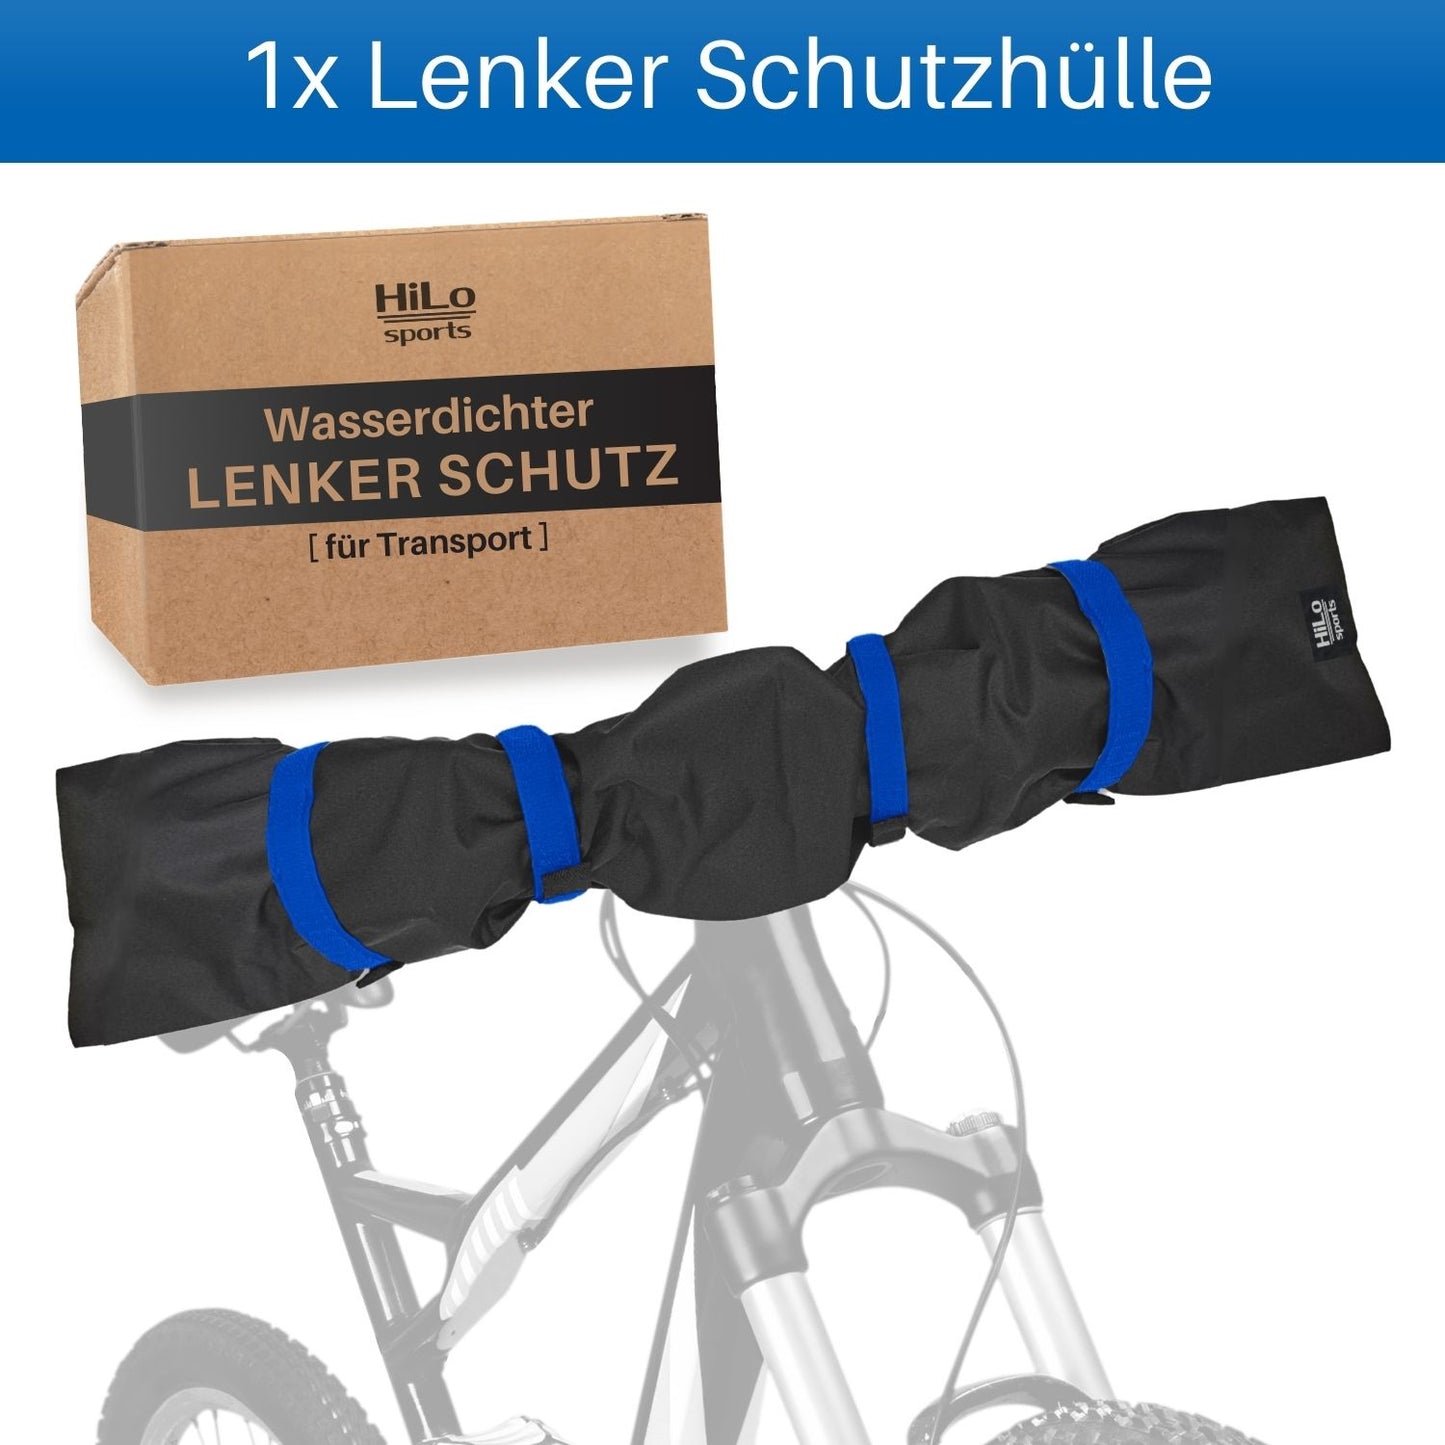 Lenkerschutz für den E-bike Transport auf Heckträger.